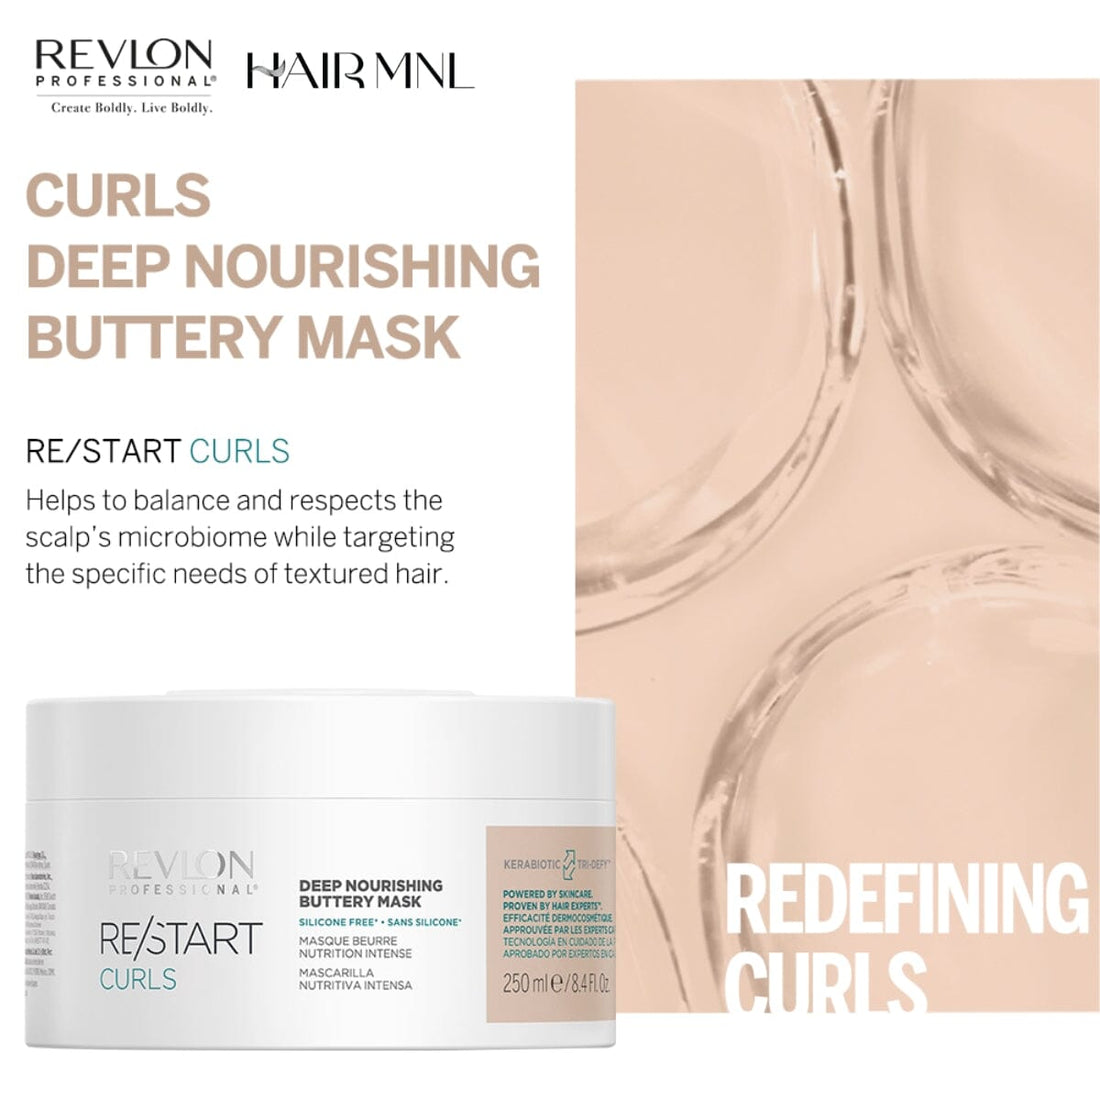 HairMNL Revlon Professional ReStart Curls Deep Nourishing Buttery Mask 250ml Benefits